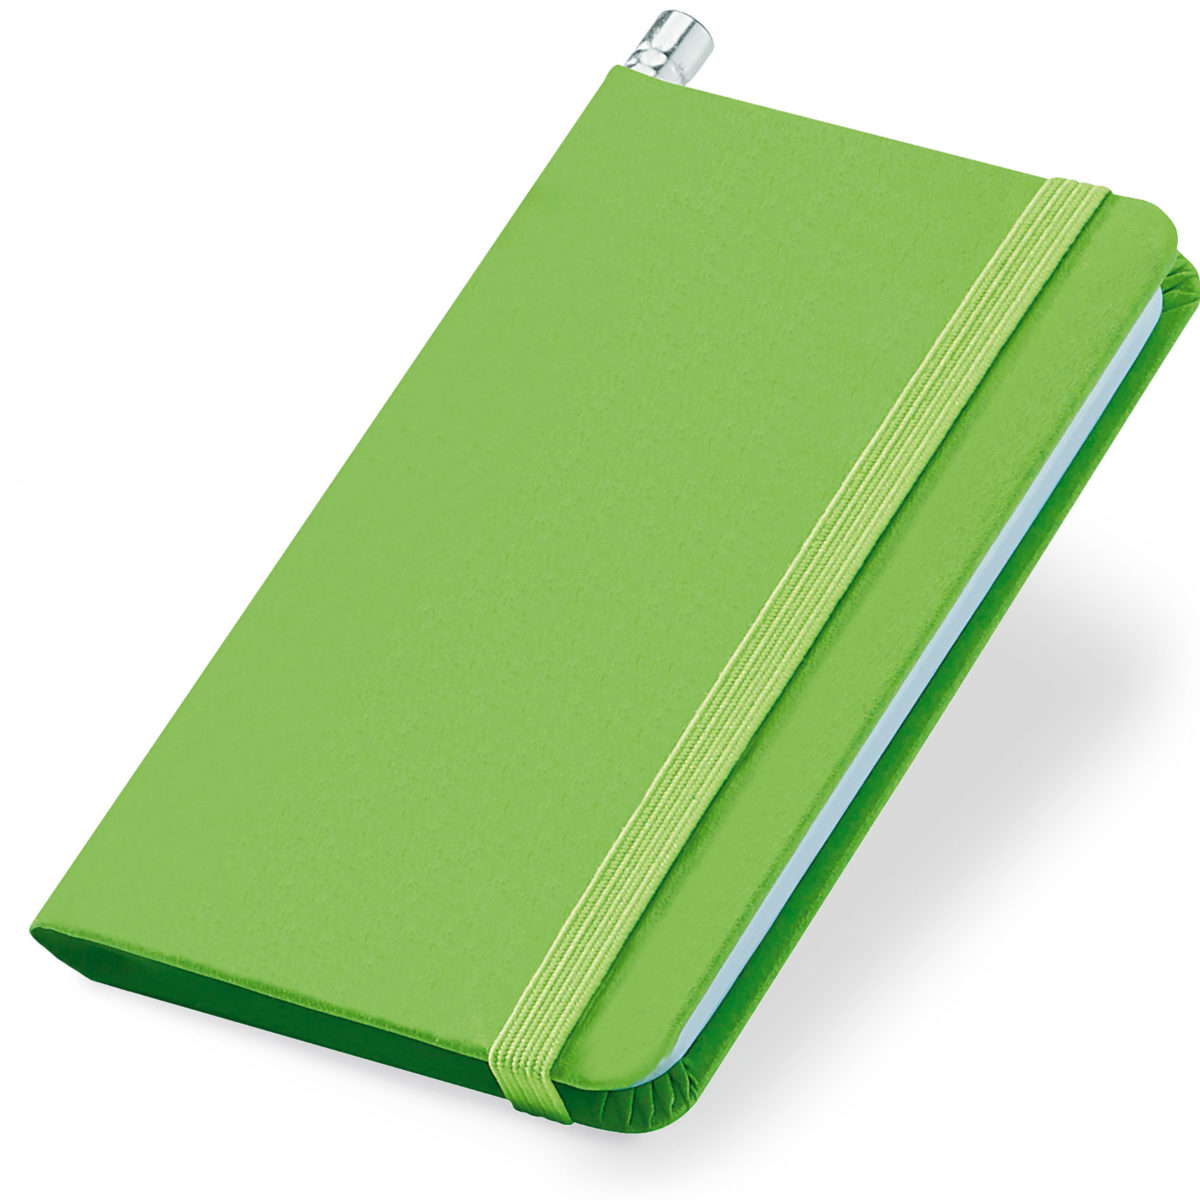 Notes A7 zielony